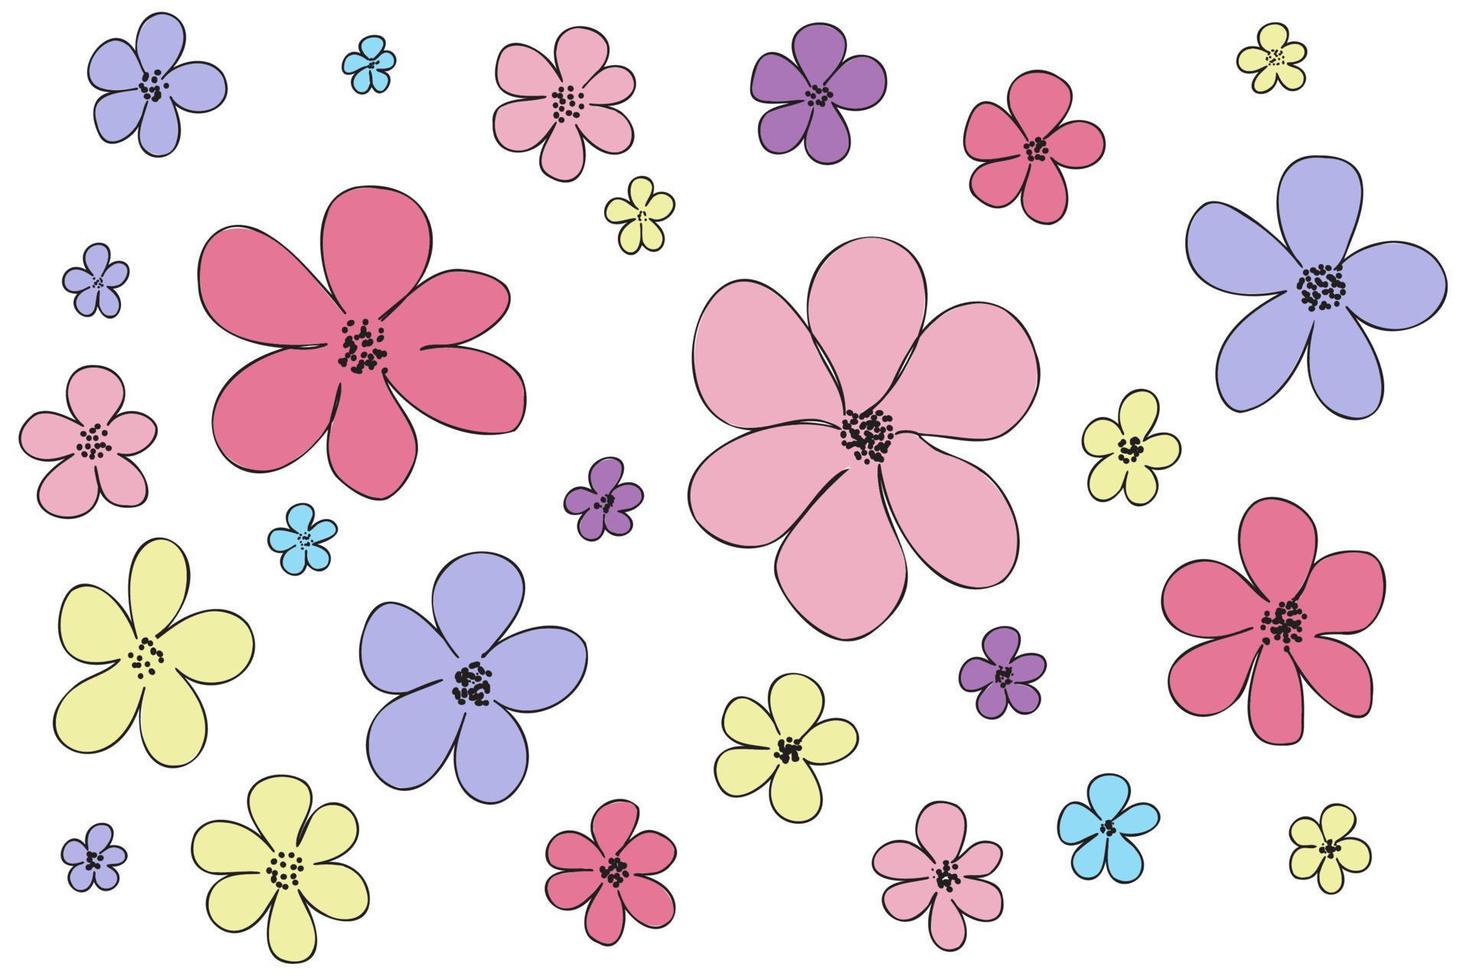 fleurs colorées à cinq et six feuilles sur fond blanc, conçues pour l'impression sur tissu, carte postale, saint valentin, 8 mars vecteur